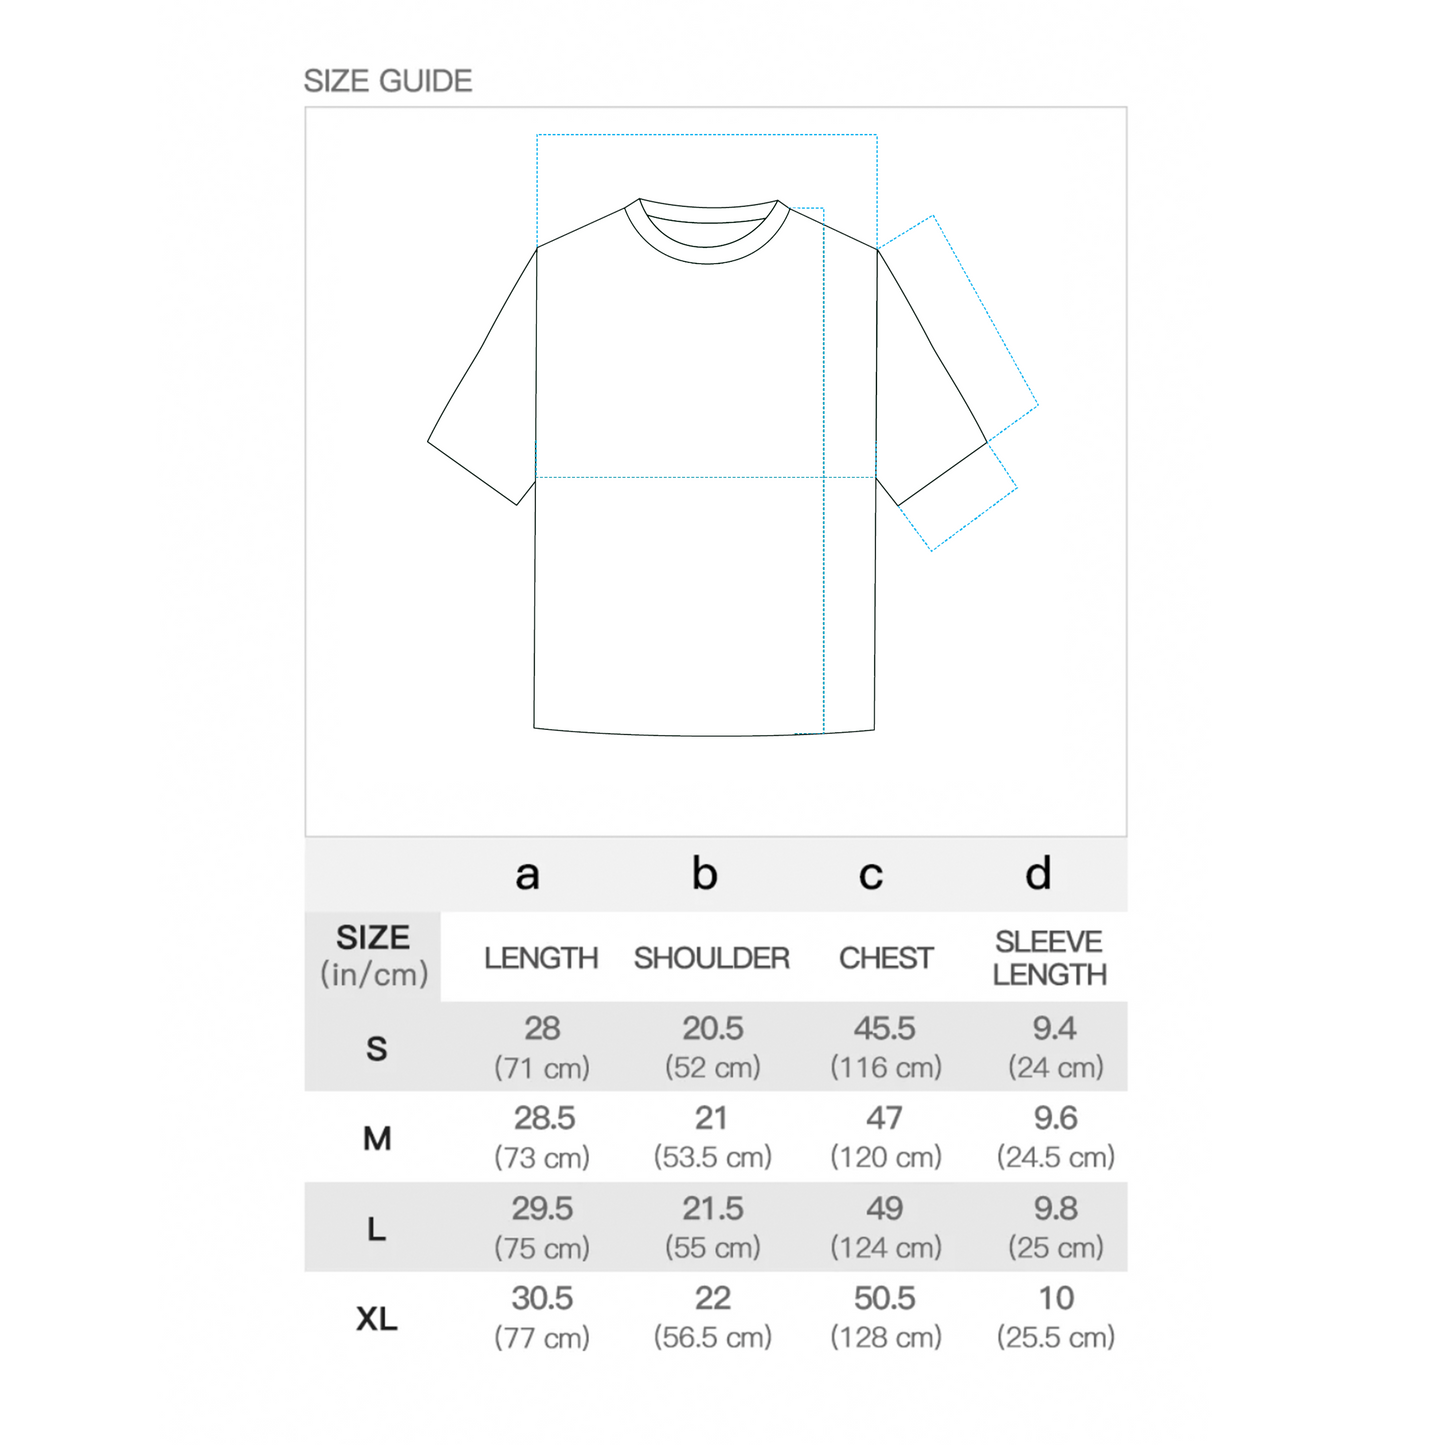 T-shirt chart